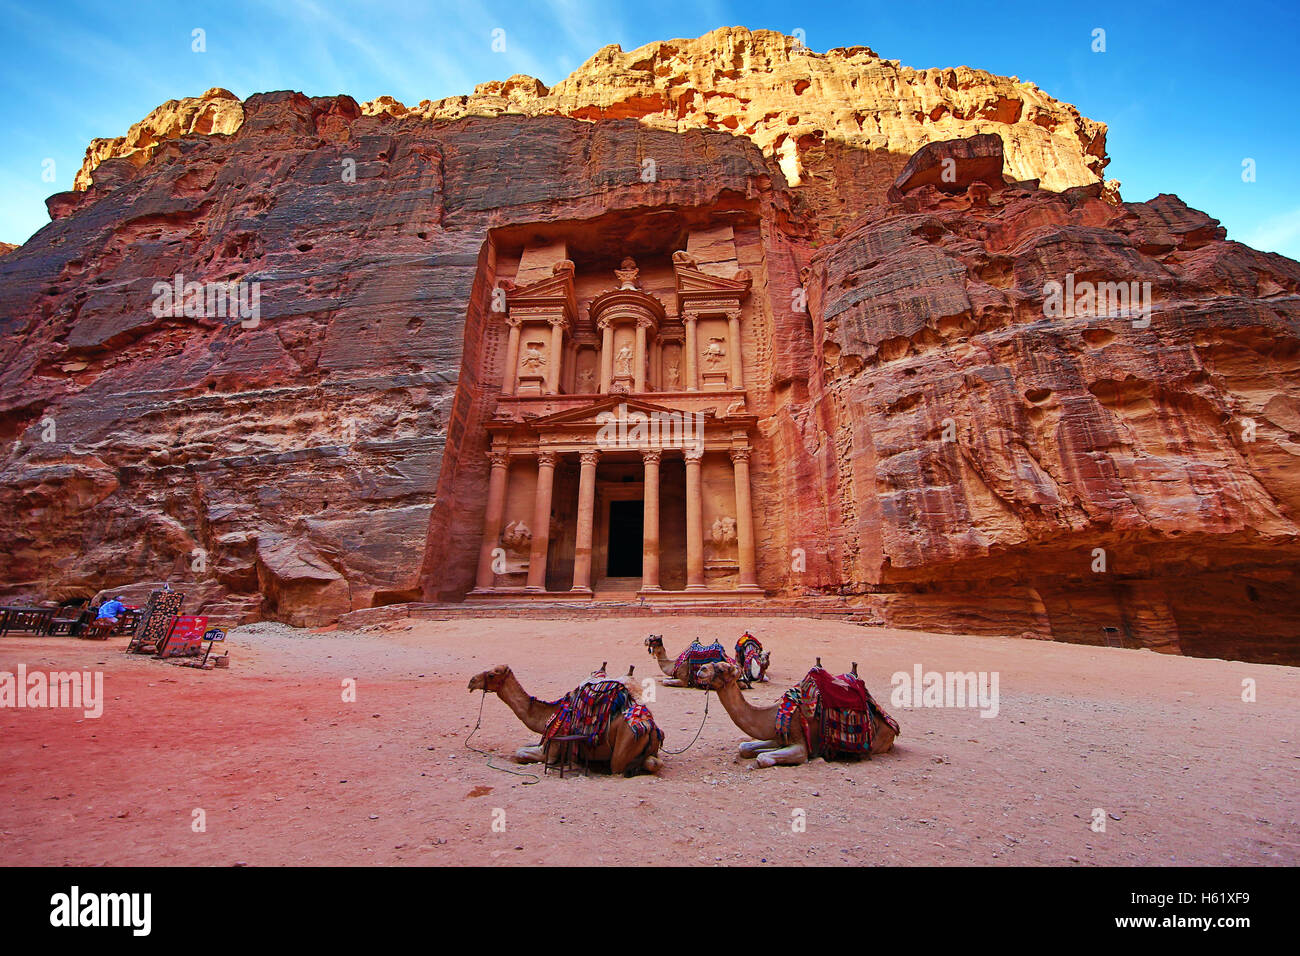 Vue de la trésorerie, Al-Khazneh, avec des chameaux, Petra, Jordanie Banque D'Images